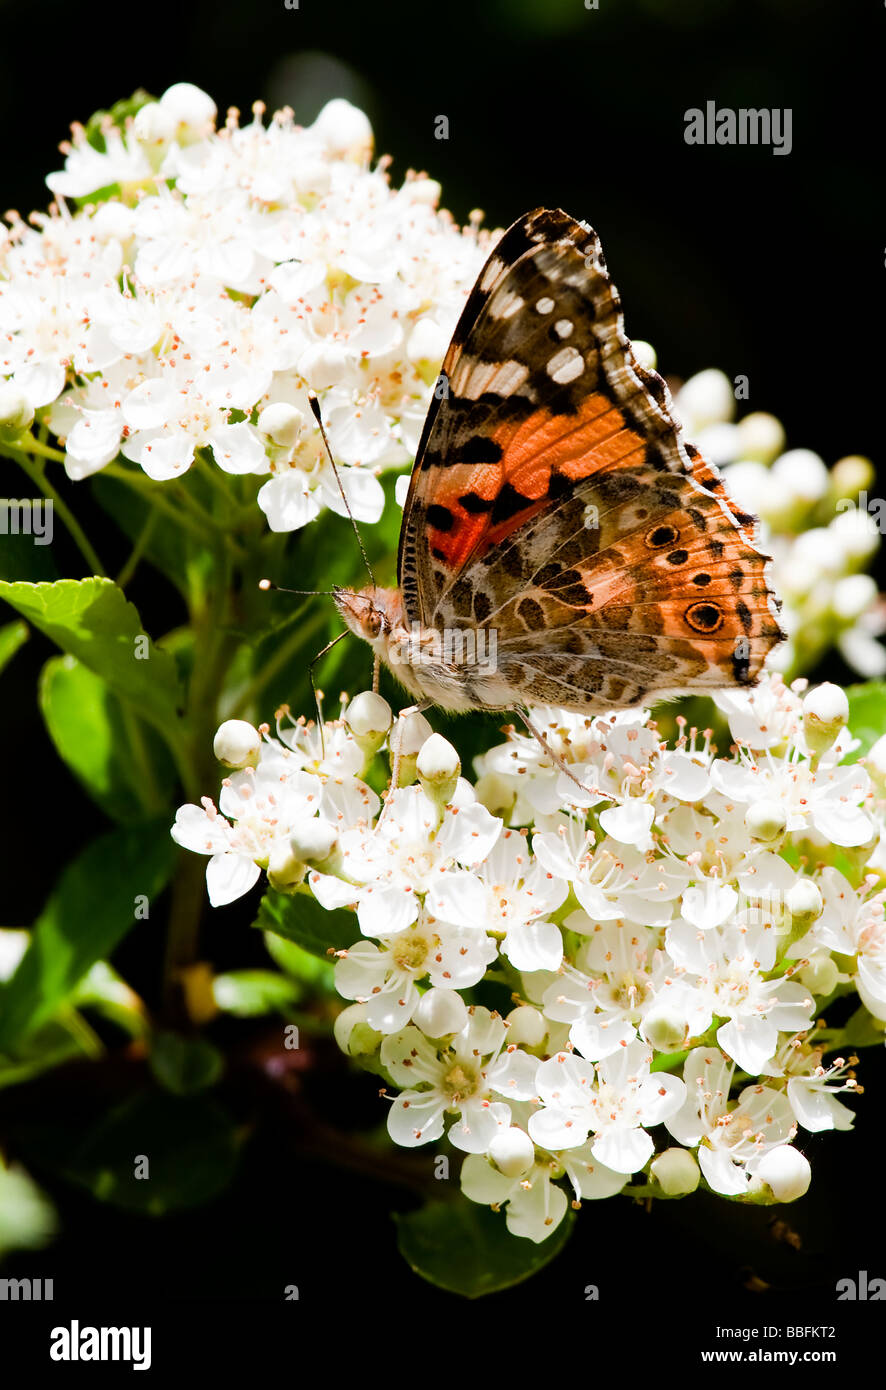 Distelfalter Schmetterling ruht auf weiß blühende Weißdorn Busch.  Vanessa Cardui Spannweite 60mm Stockfoto